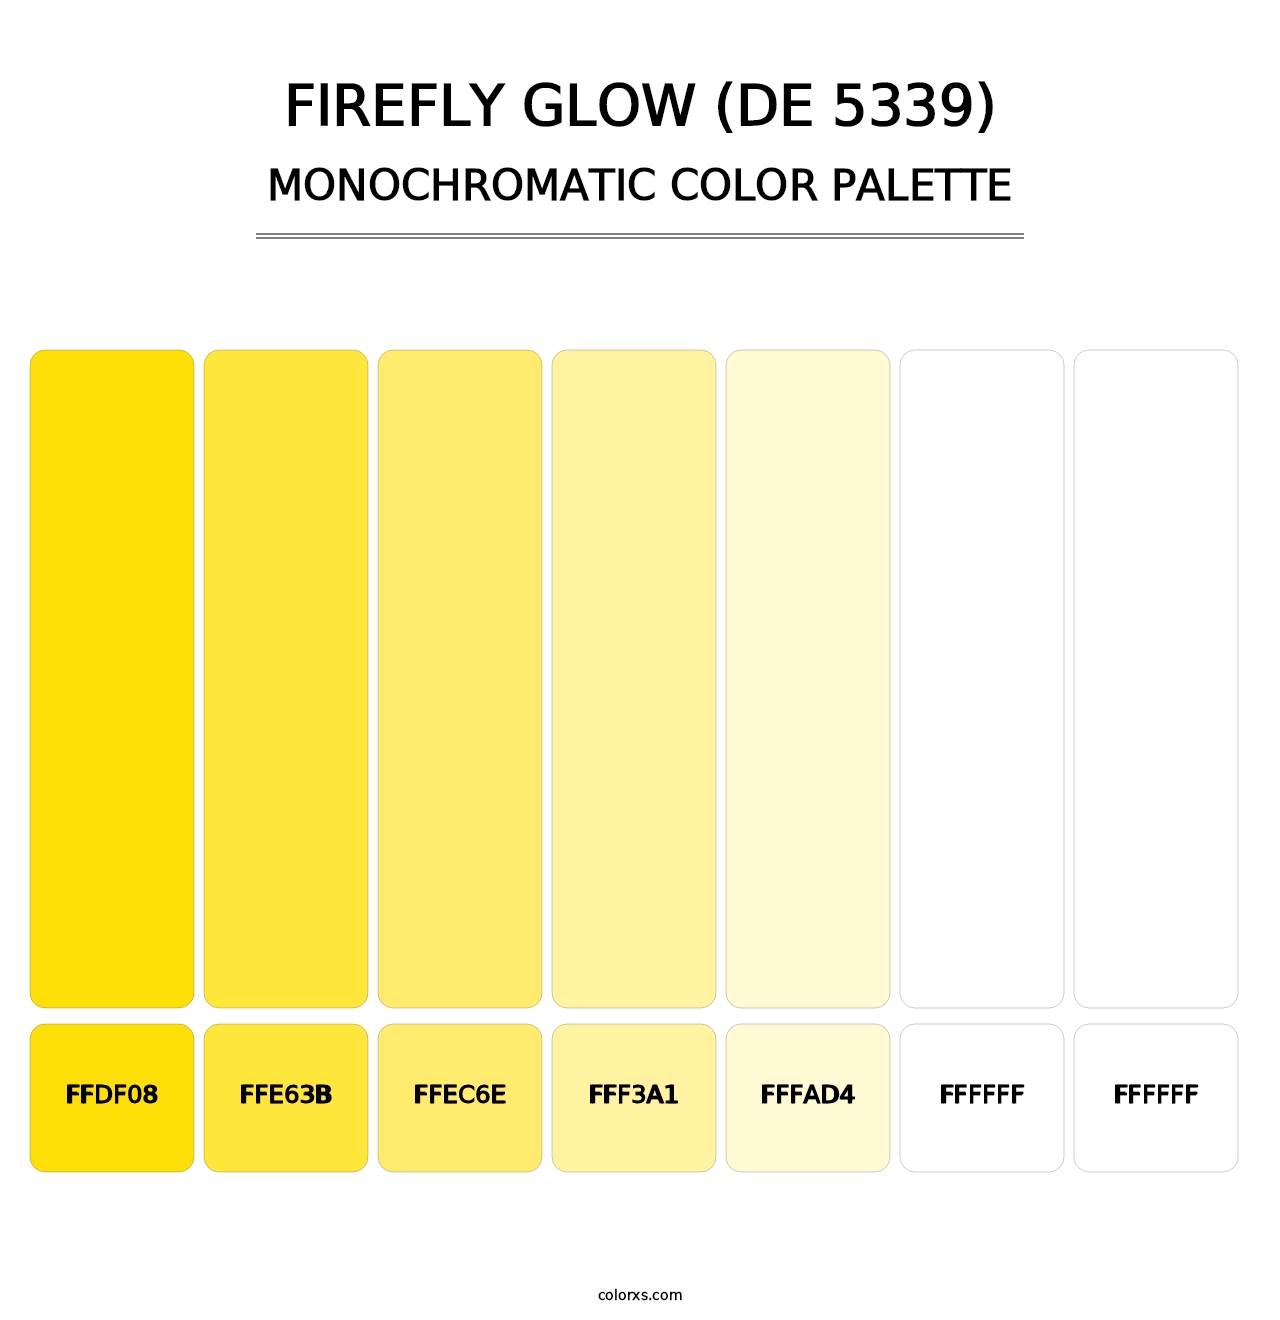 Firefly Glow (DE 5339) - Monochromatic Color Palette